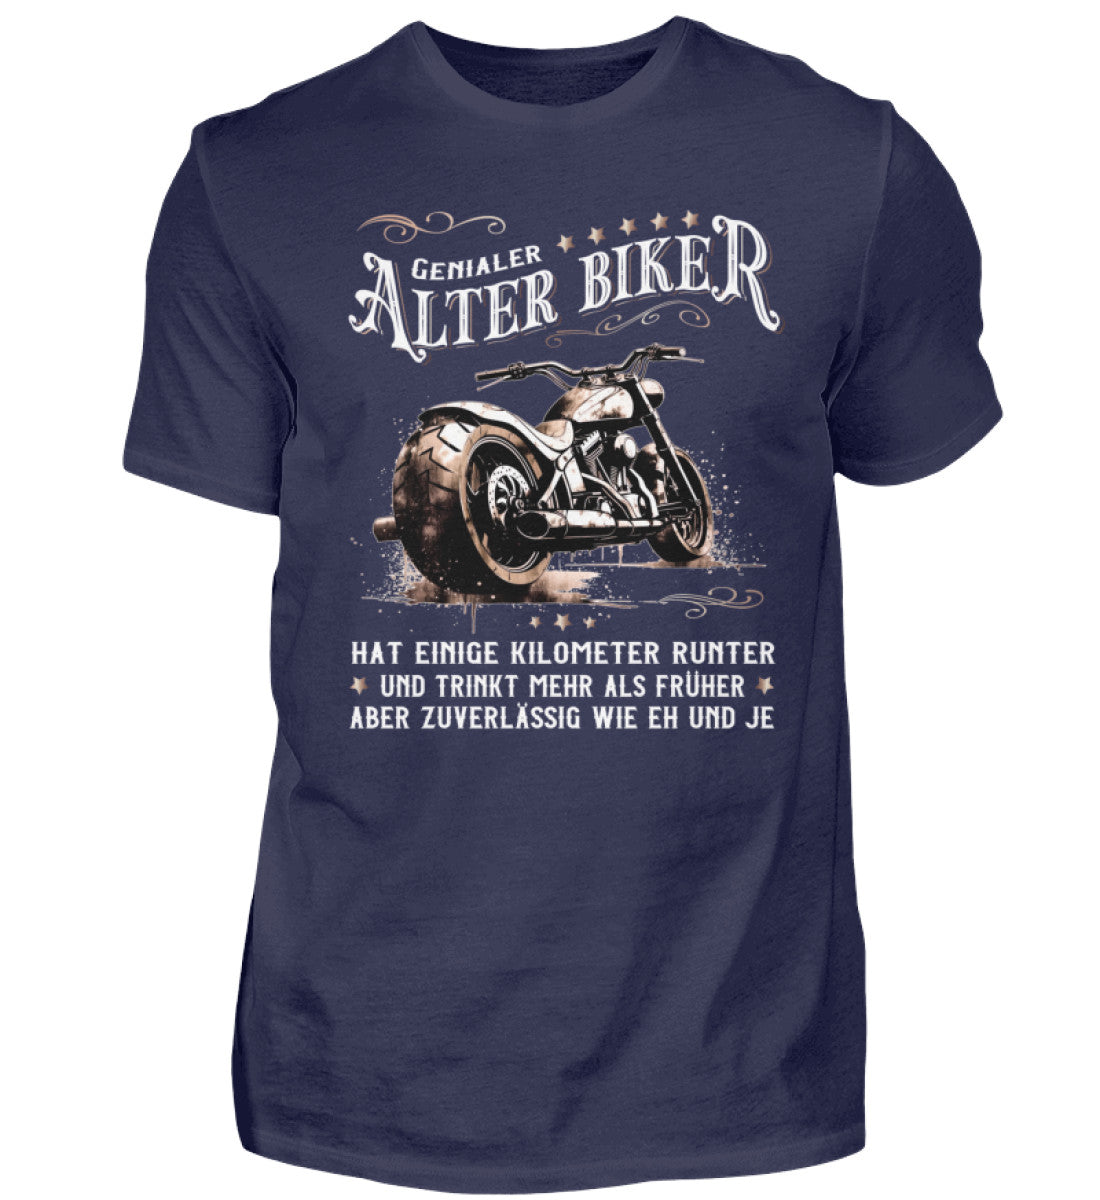 Ein Biker T-Shirt für Motorradfahrer von Wingbikers mit dem Aufdruck, Alter Biker - Einige Kilometer runter, trinkt mehr - aber zuverlässig wie eh und je - in navy blau.